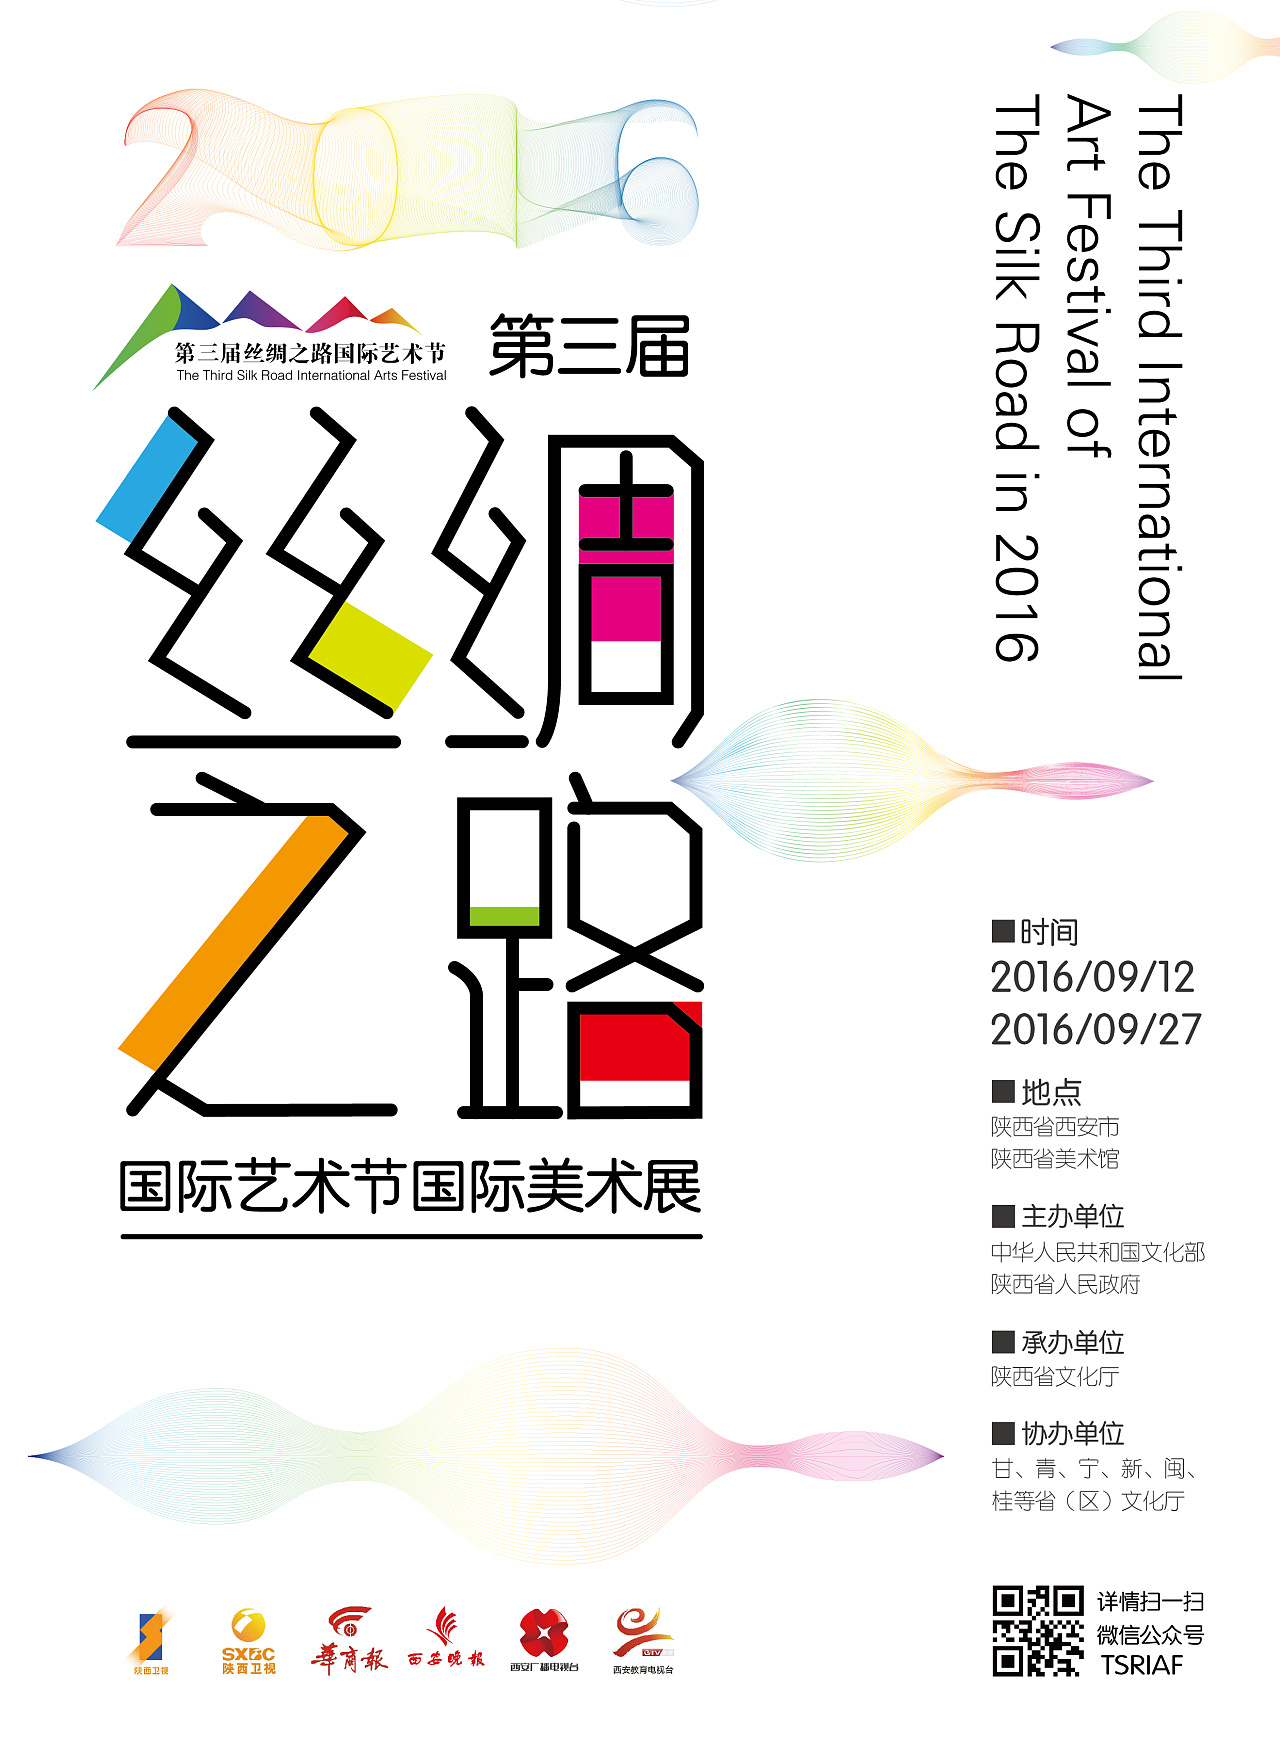 "第三届丝绸之路国际艺术节国际美术展"的海报,书籍封面和请柬,新手哈